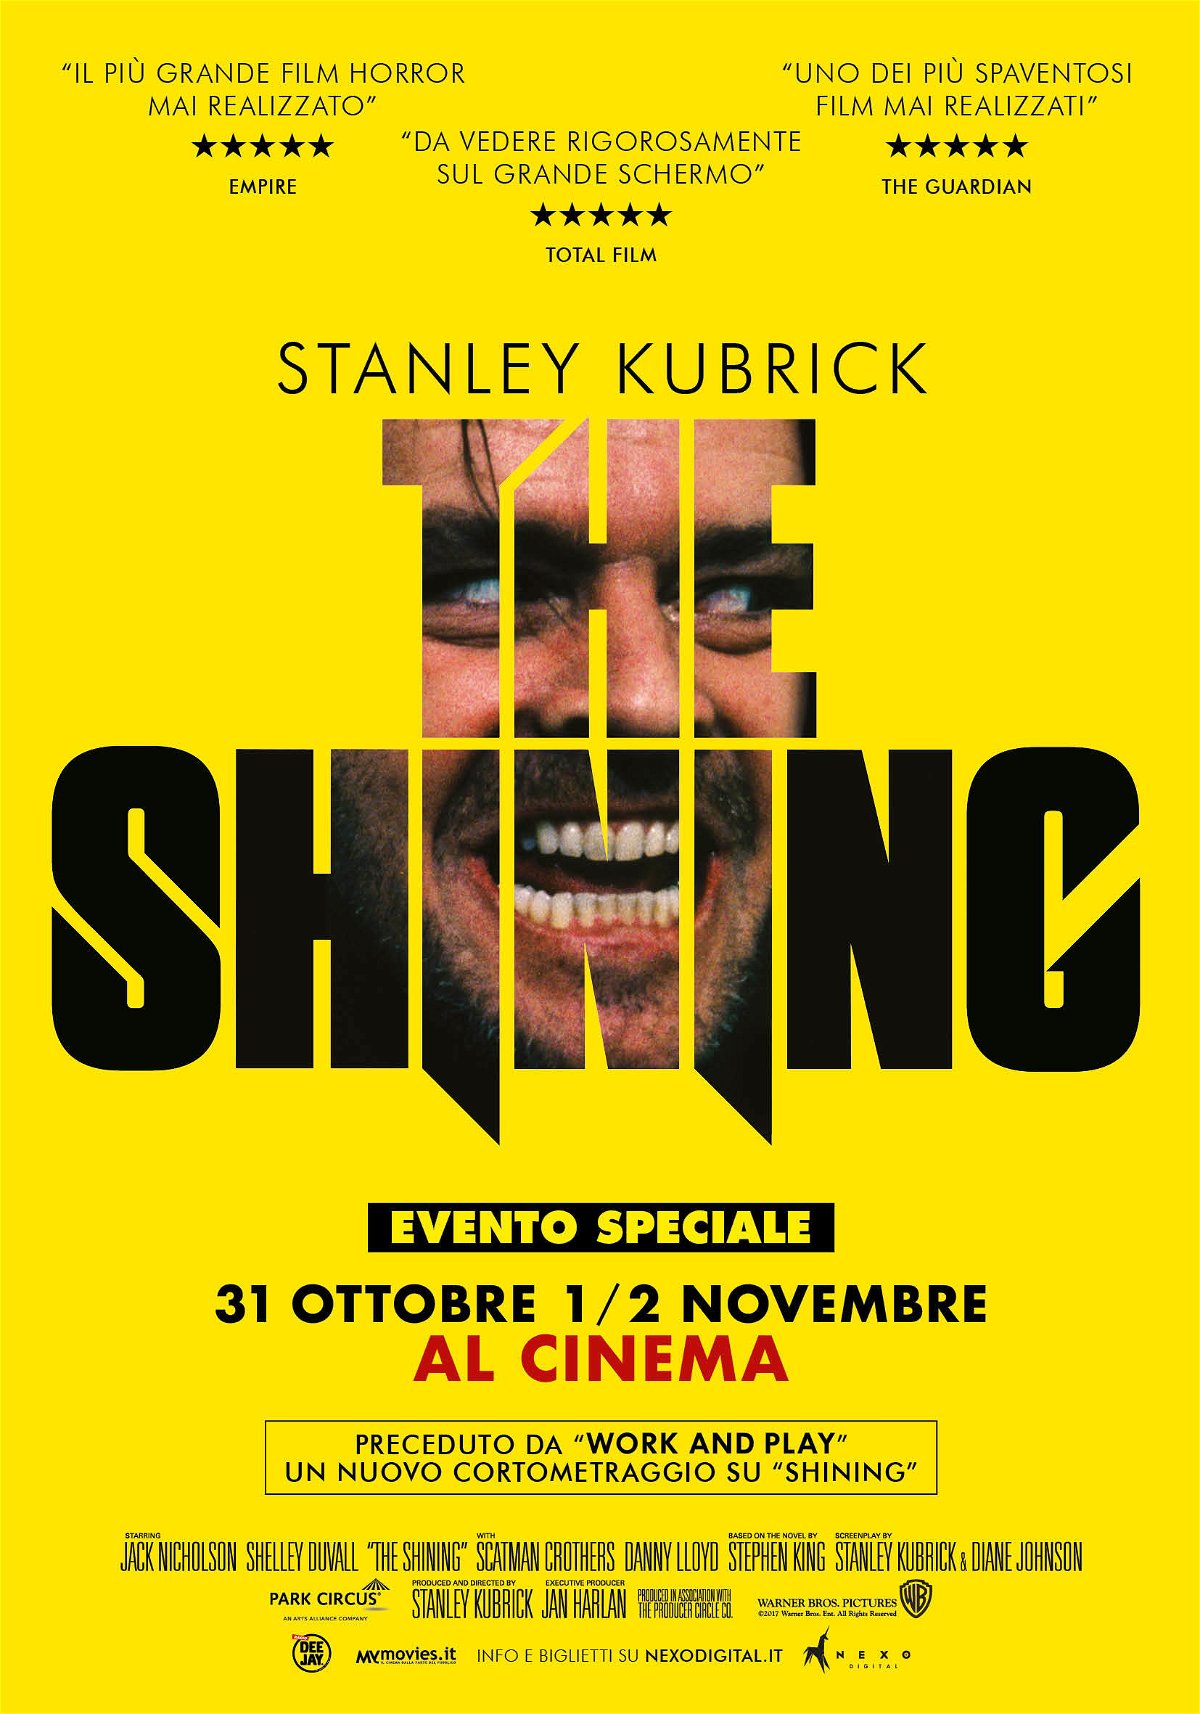 L'evento speciale di Halloween: Shining di Kubrick